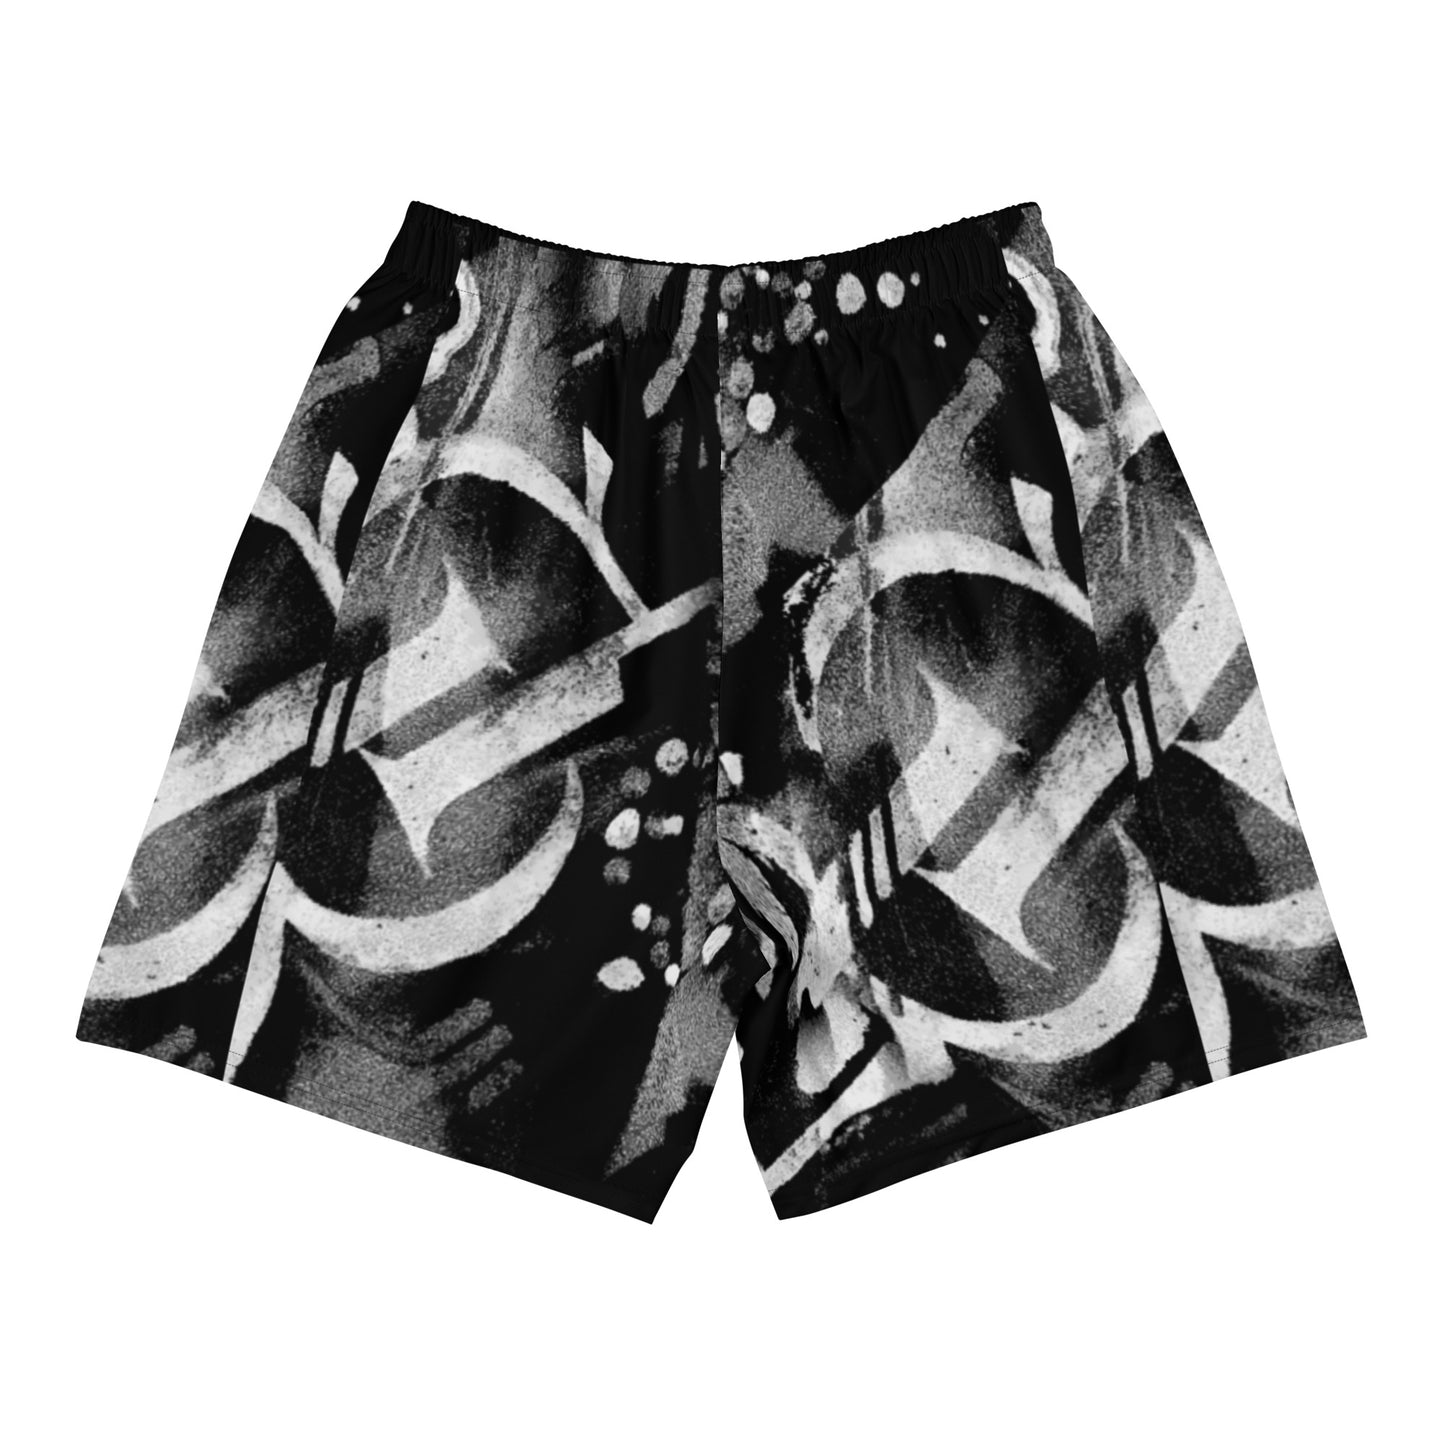 "Onyx" Athletic Shorts